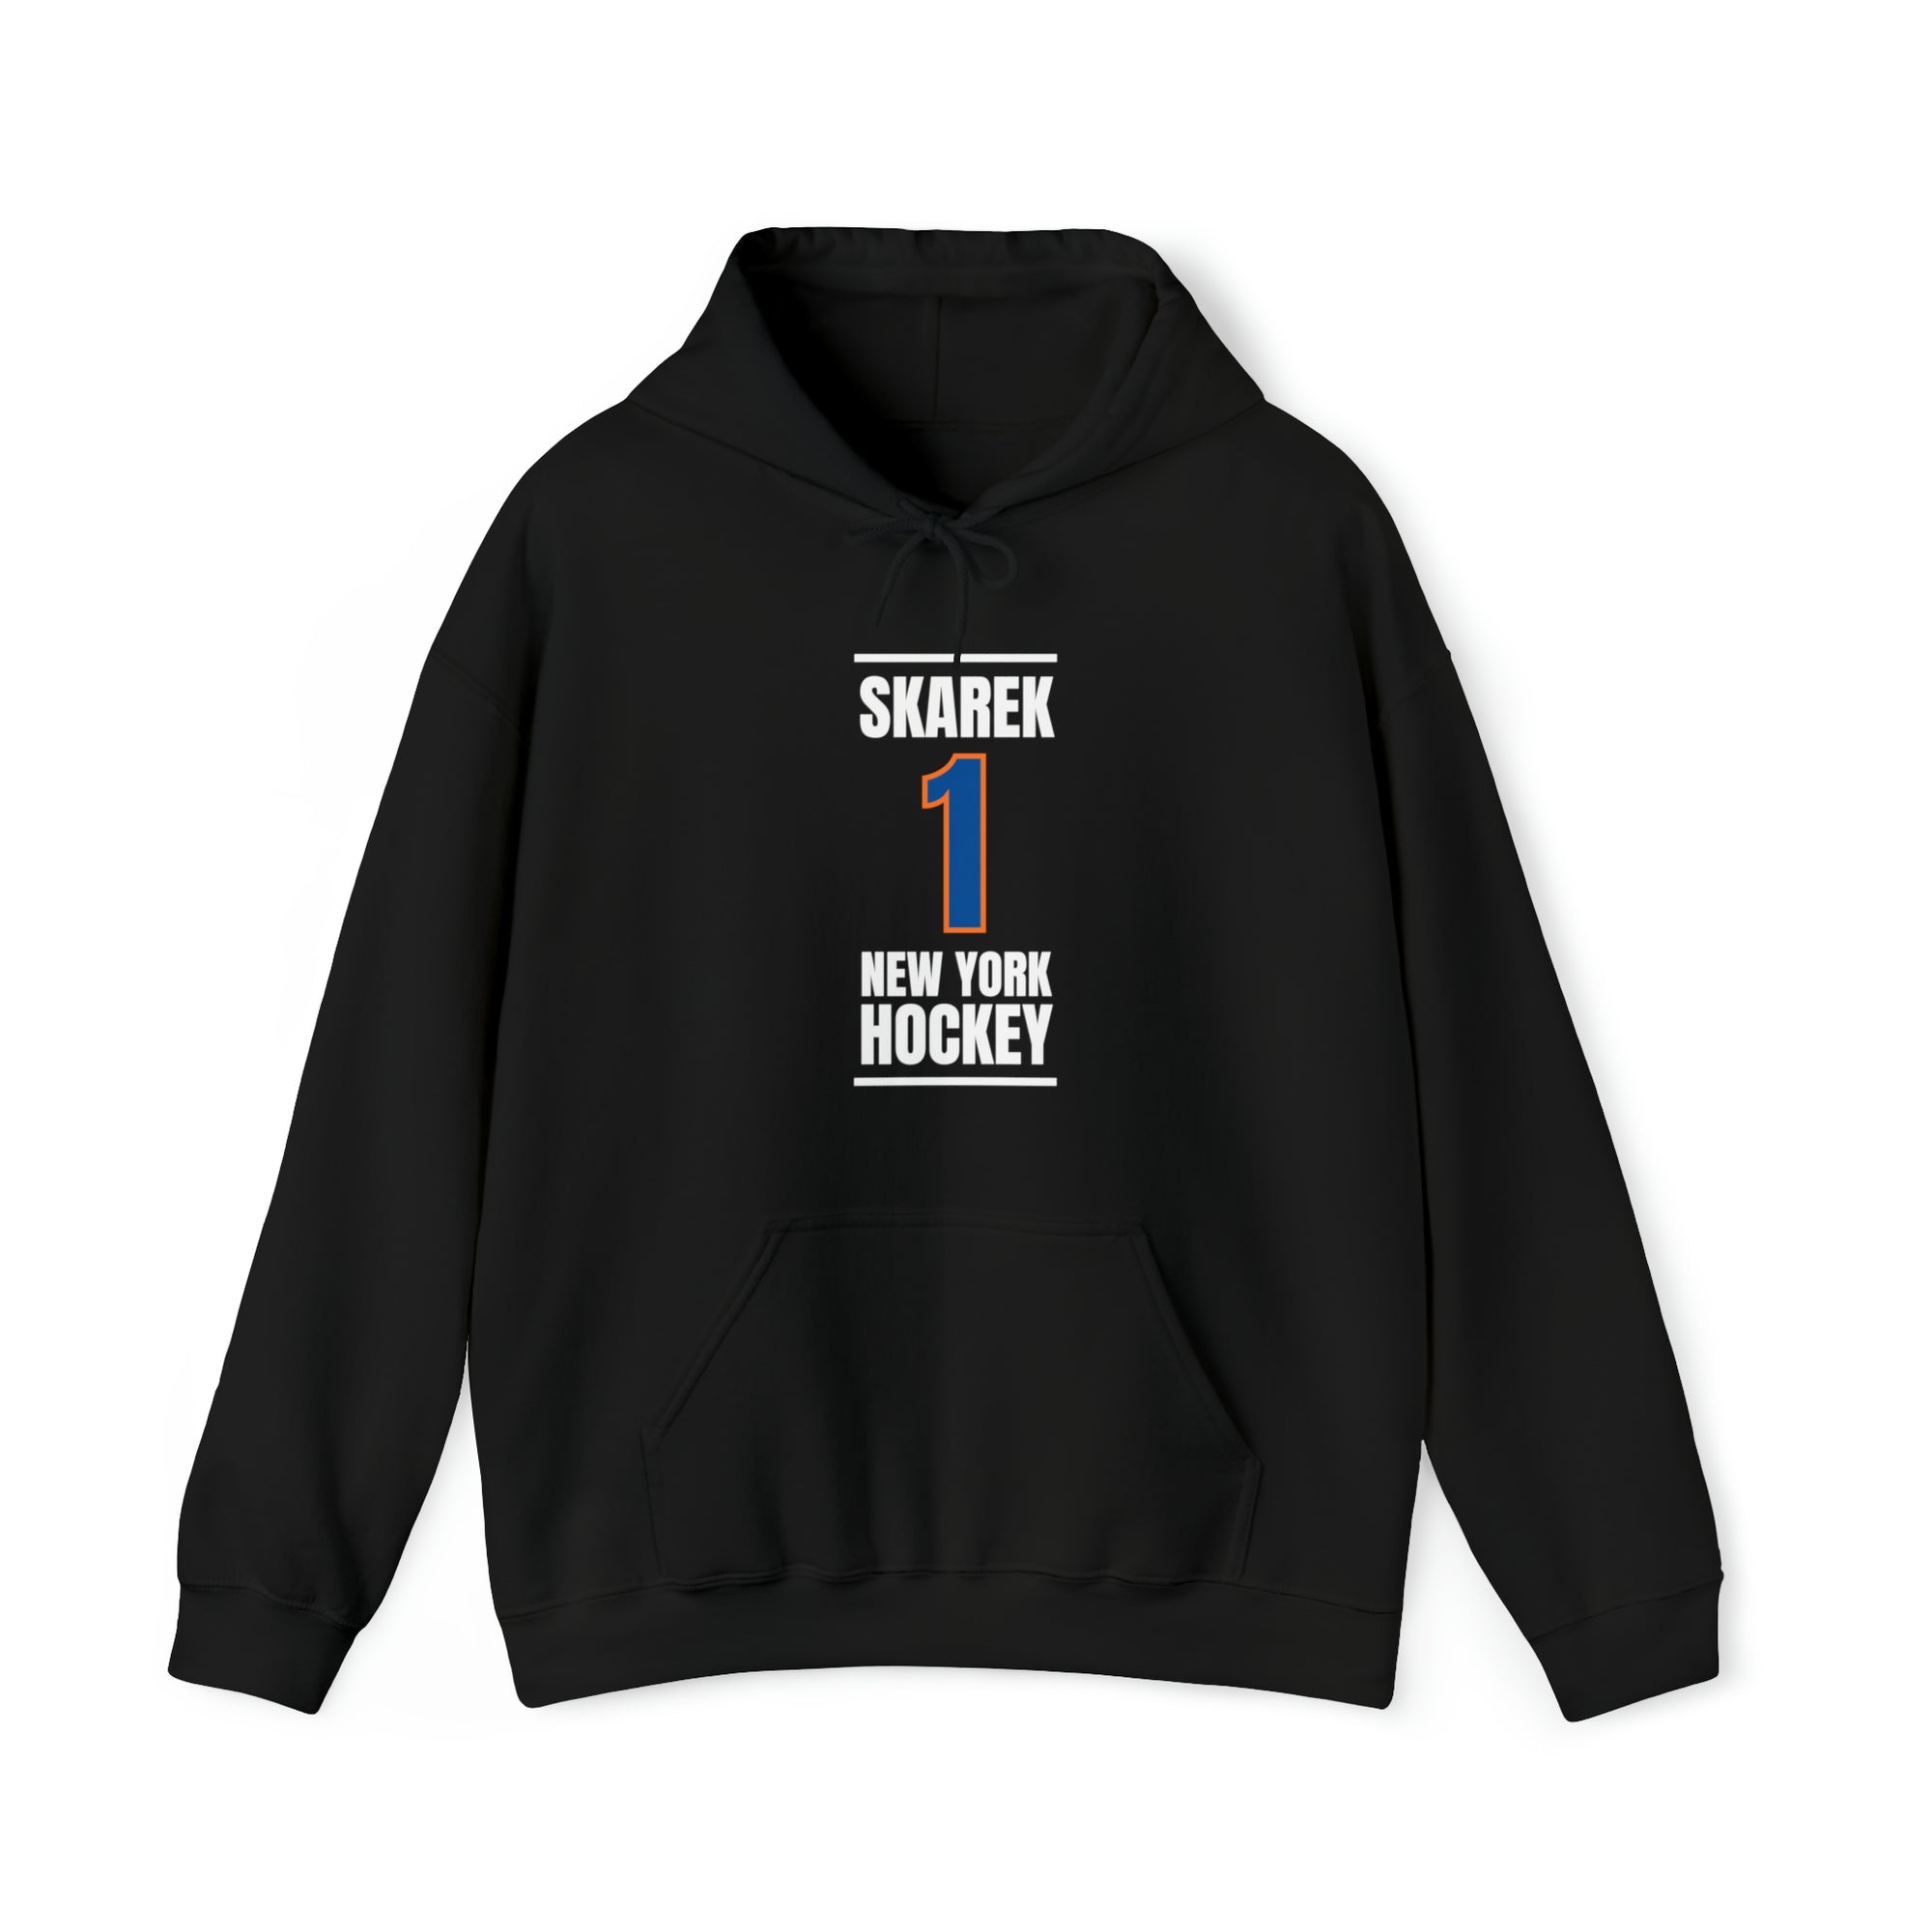 Skarek 1 New York Hockey Blue Vertical Design Unisex Hooded Sweatshirt